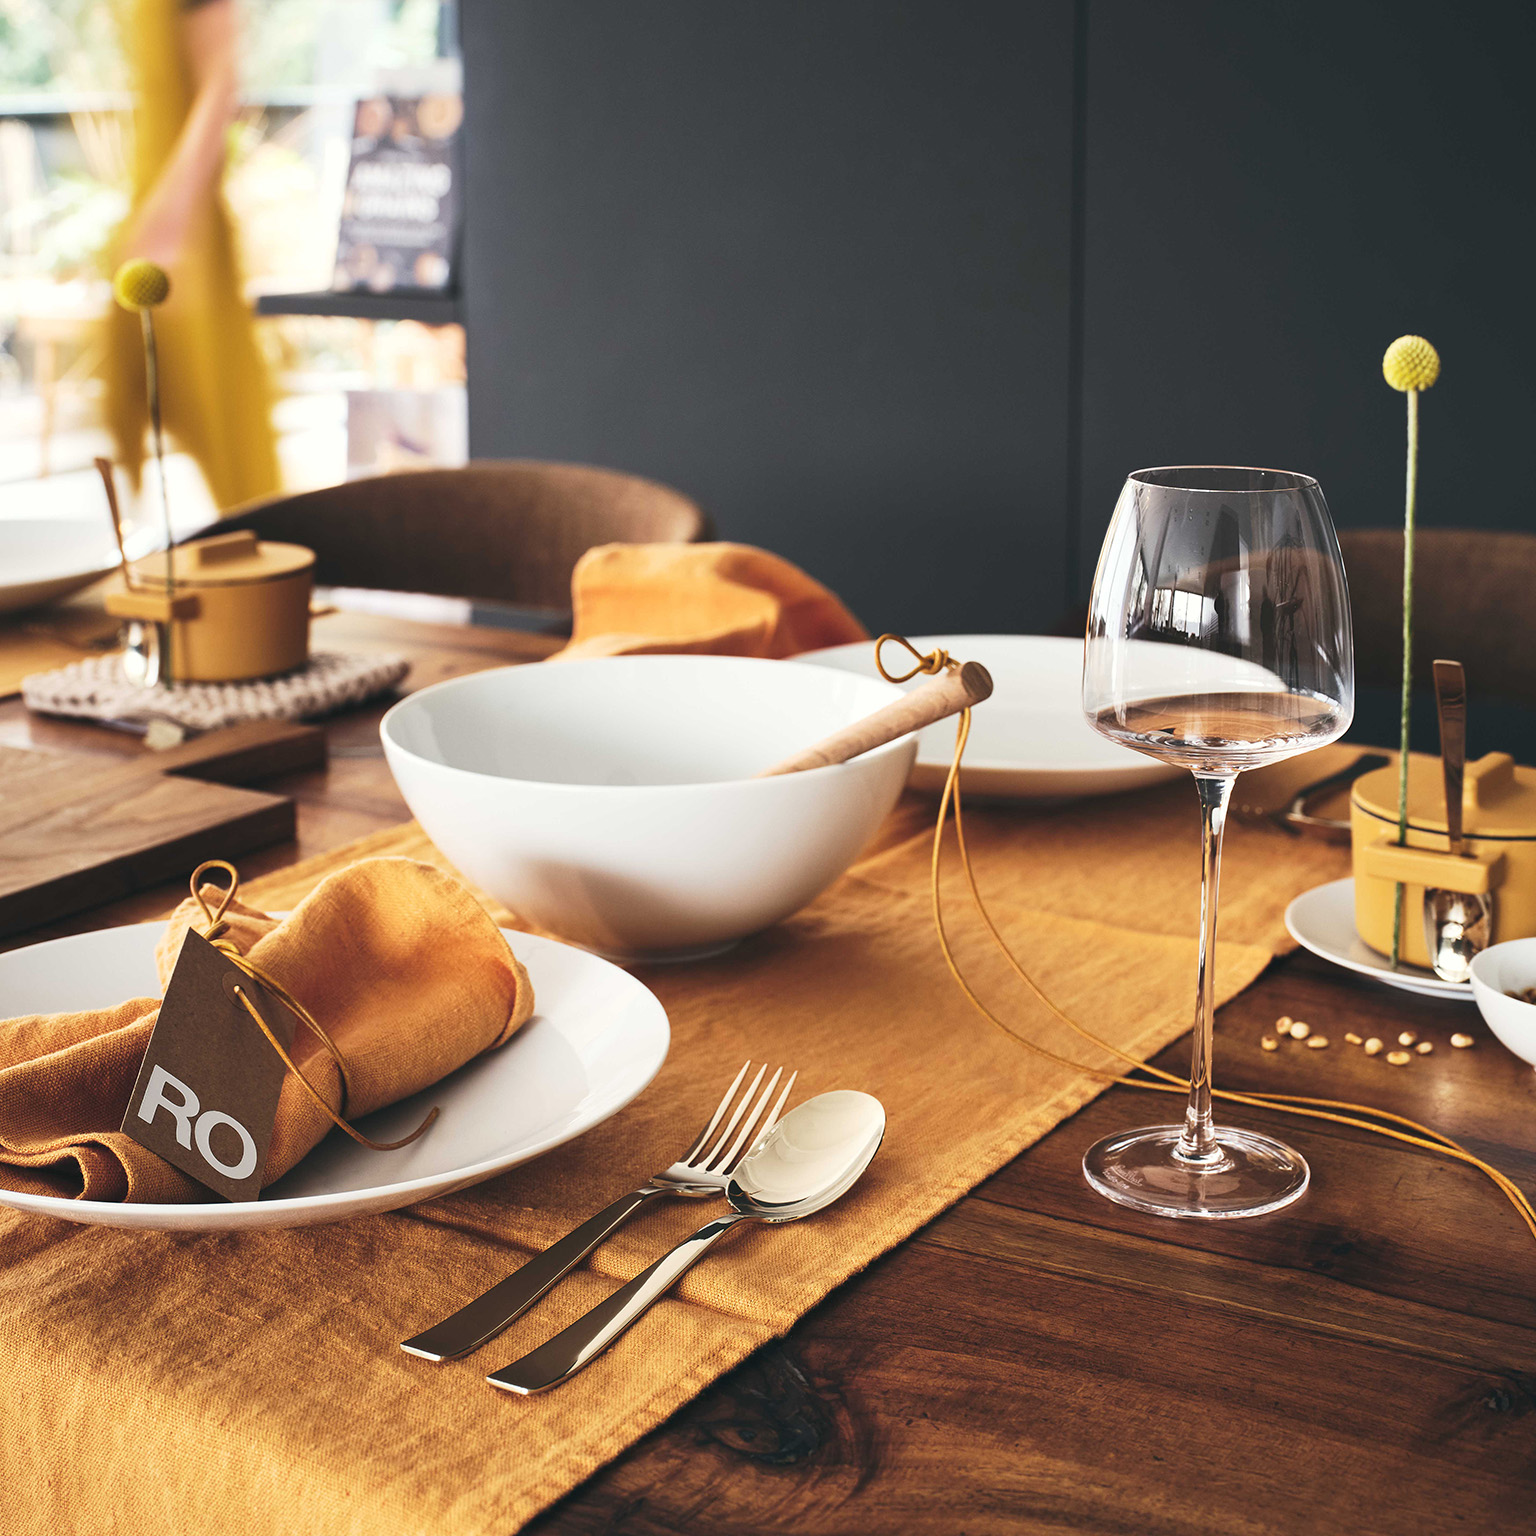 Gros plan sur une table en bois recouverte de TAC blanc avec une nappe jaune moutarde, des verres à vin et le bol TAC Allround au centre de la table.